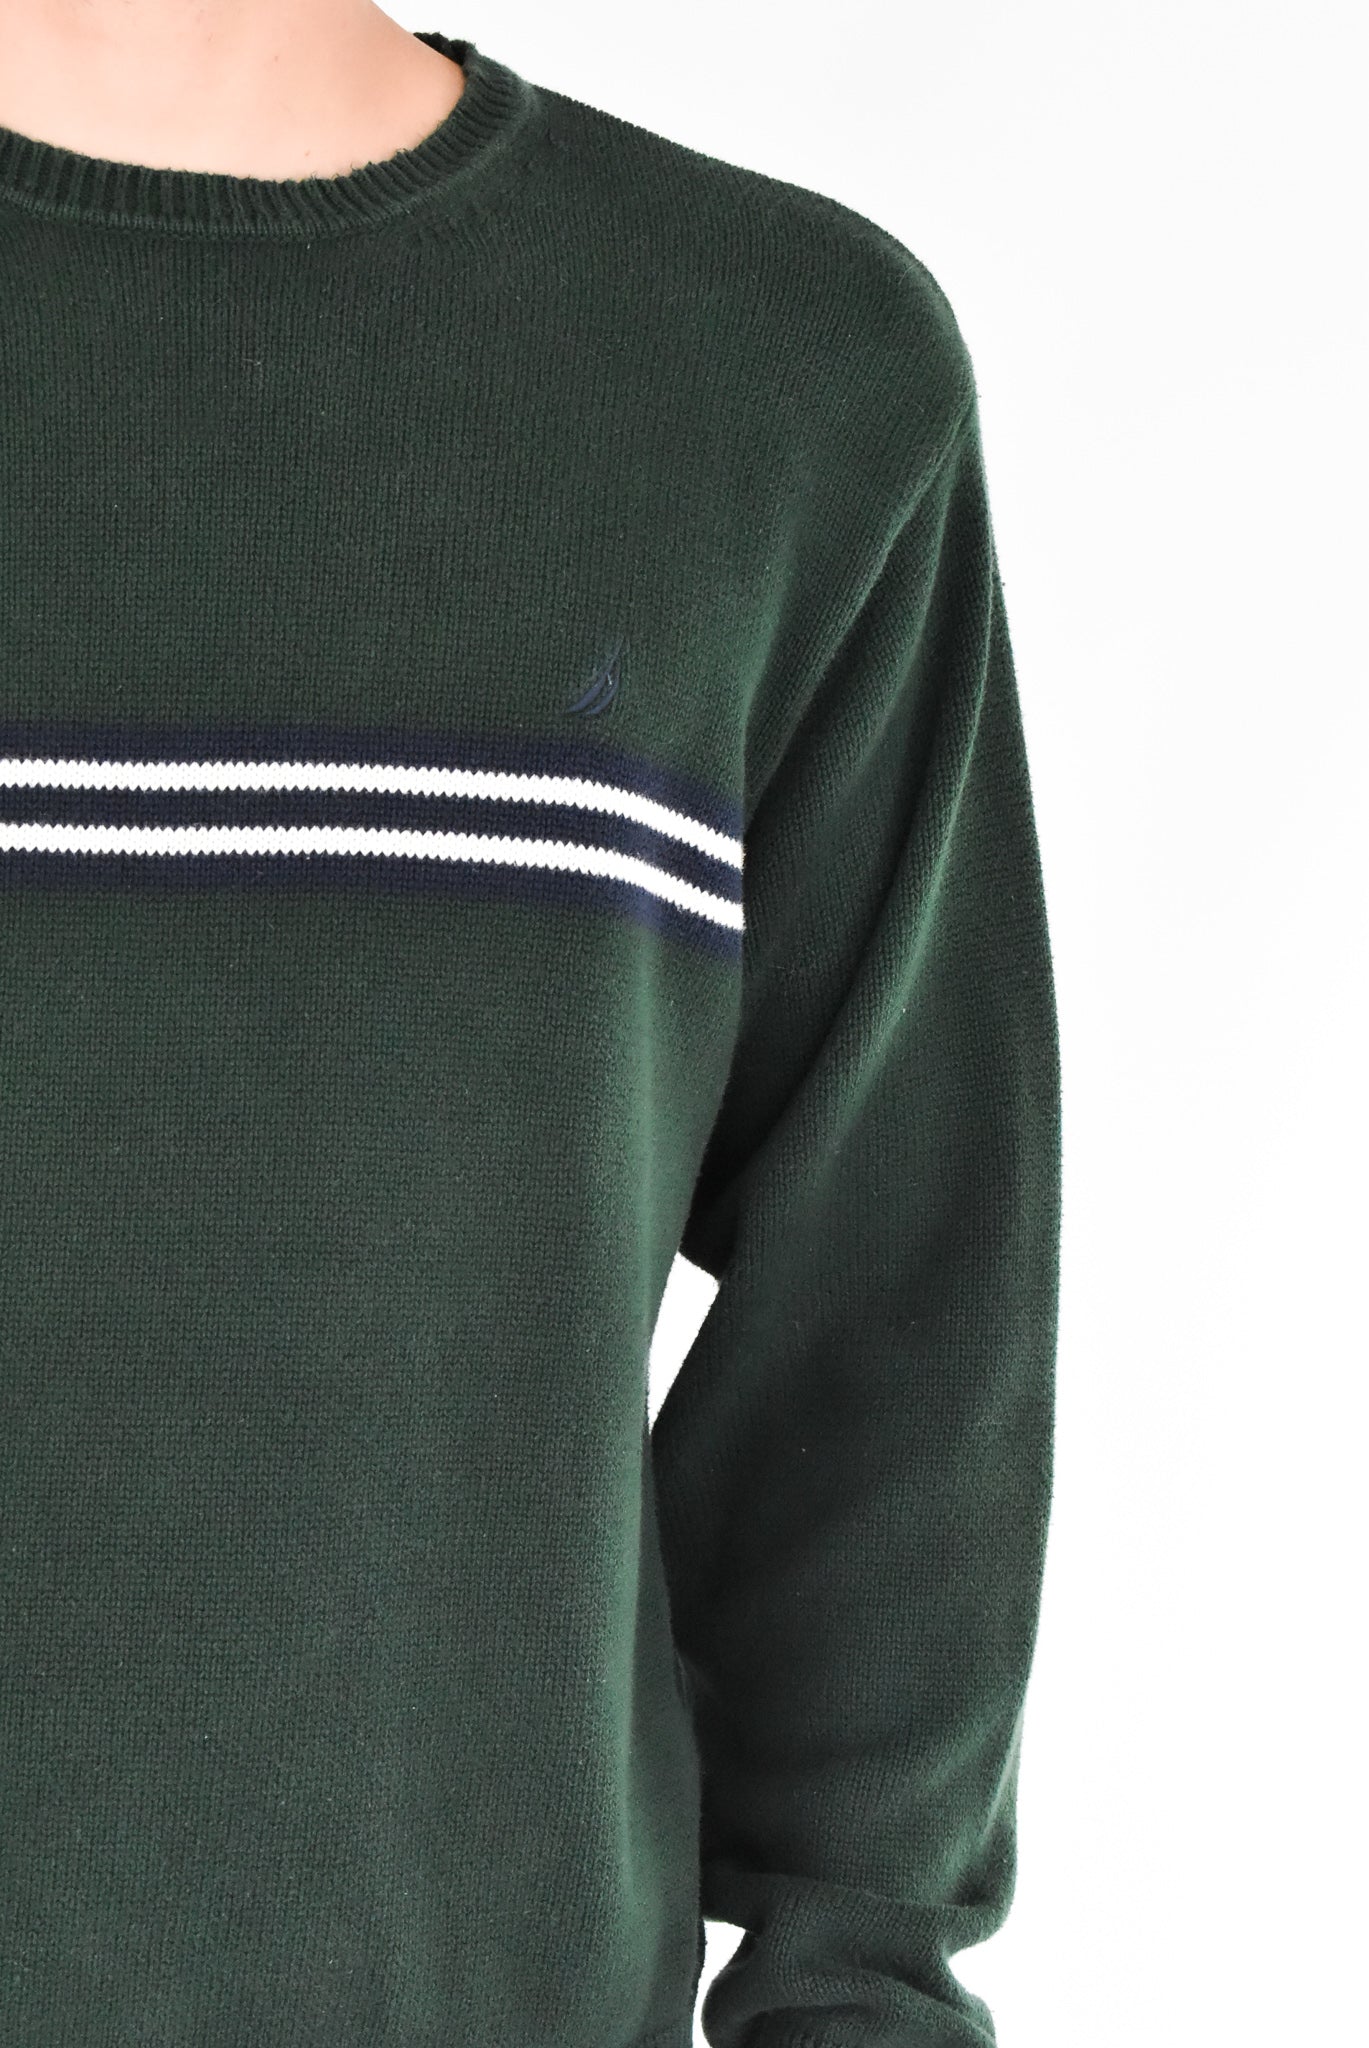 Nautica Knitted Sweater